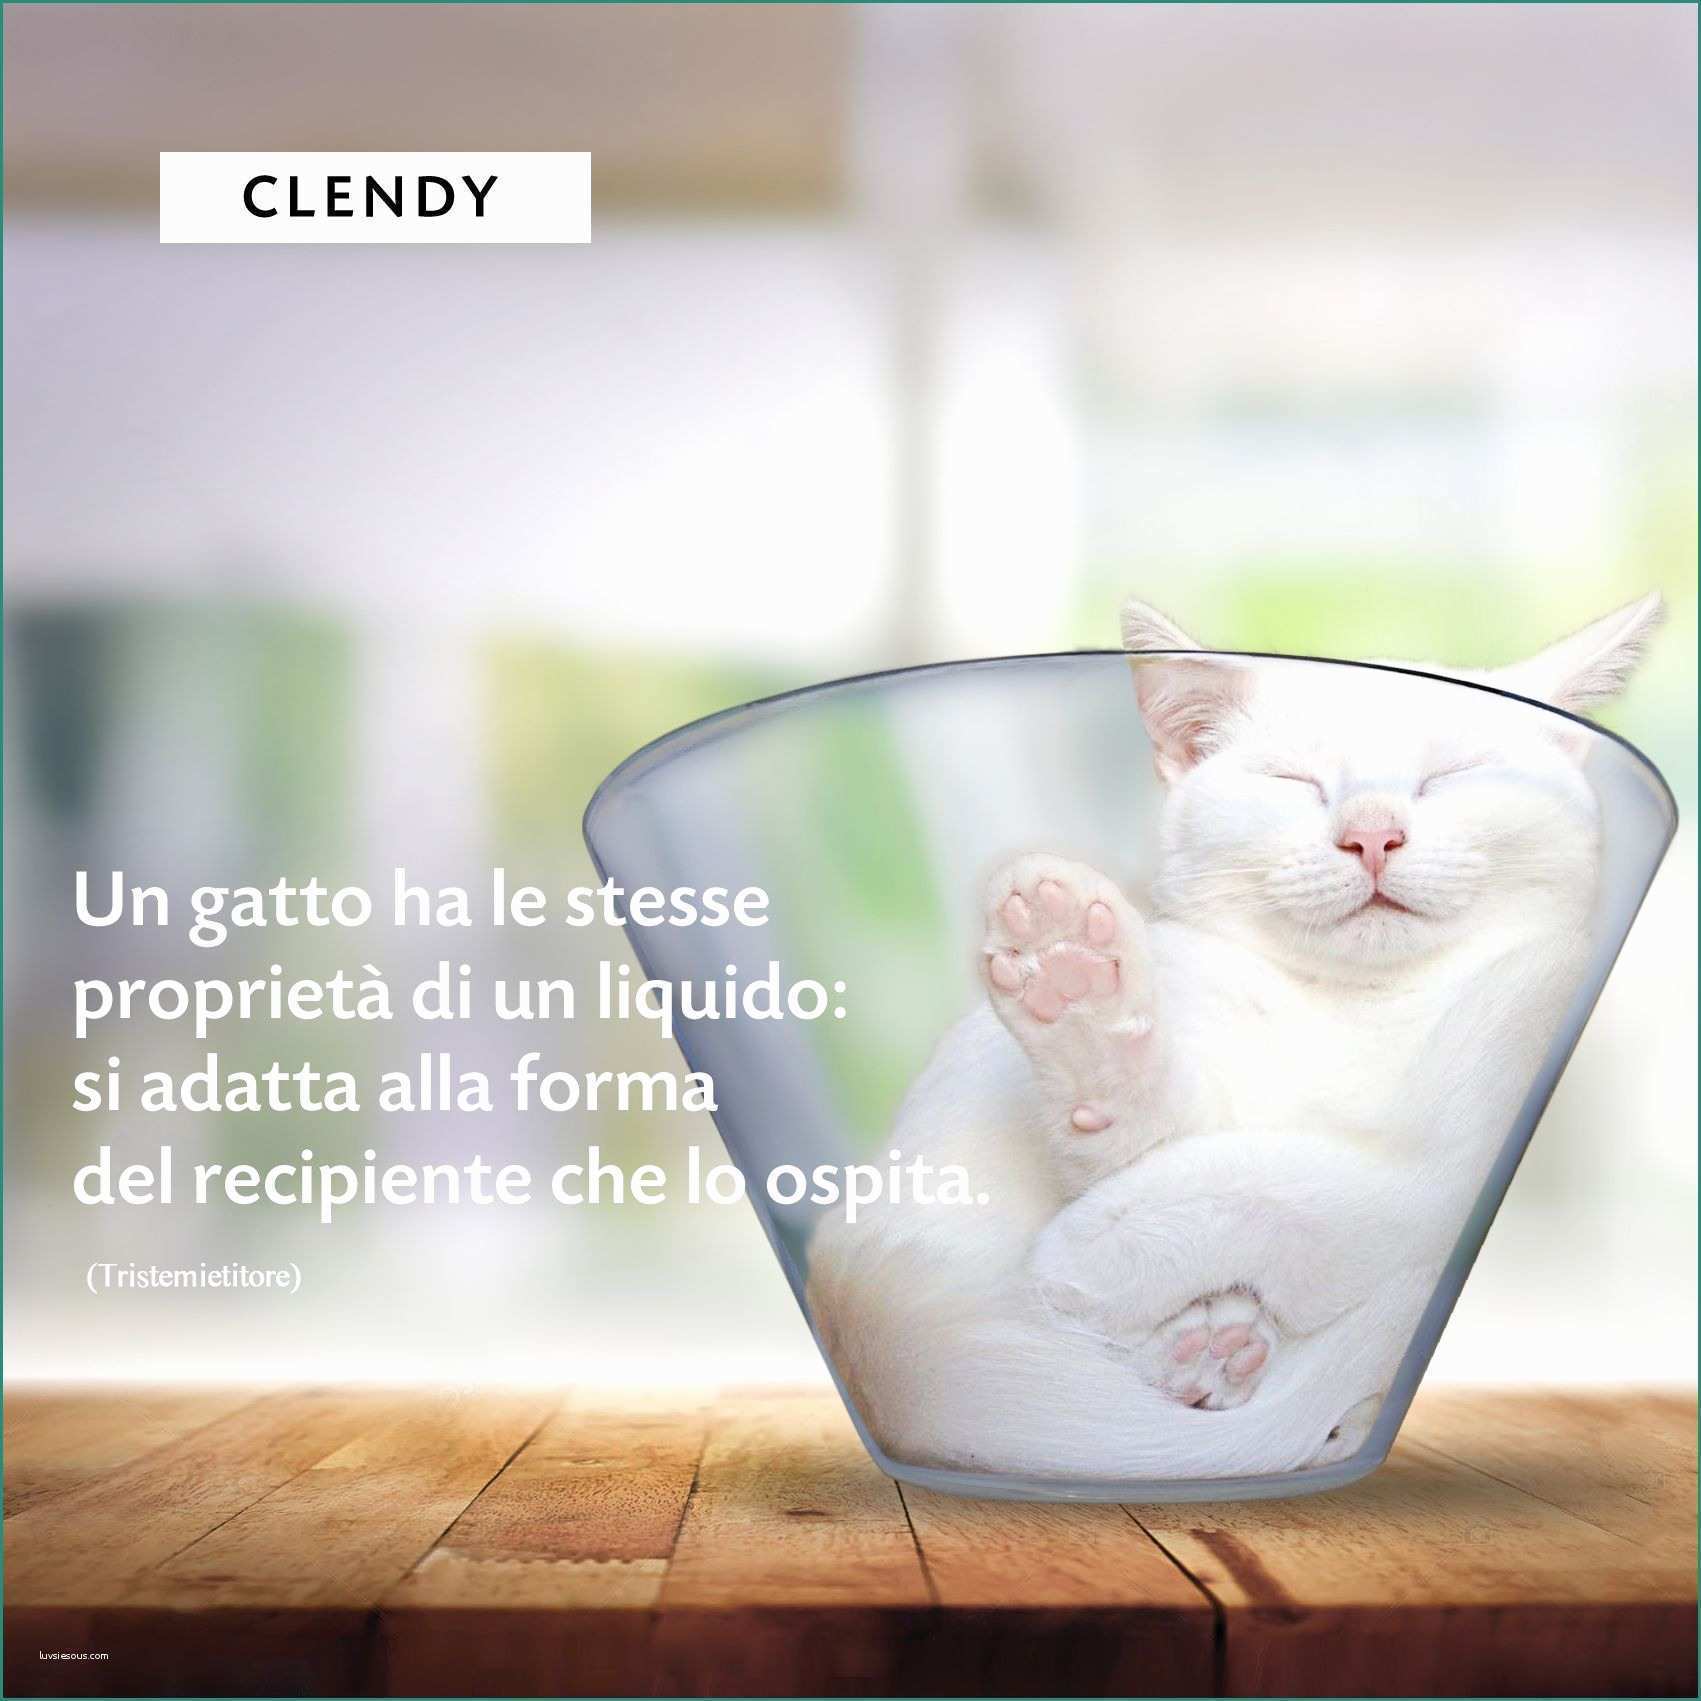 Disegnare Un Gatto E Clendy Spa Clendyitalia Auf Pinterest